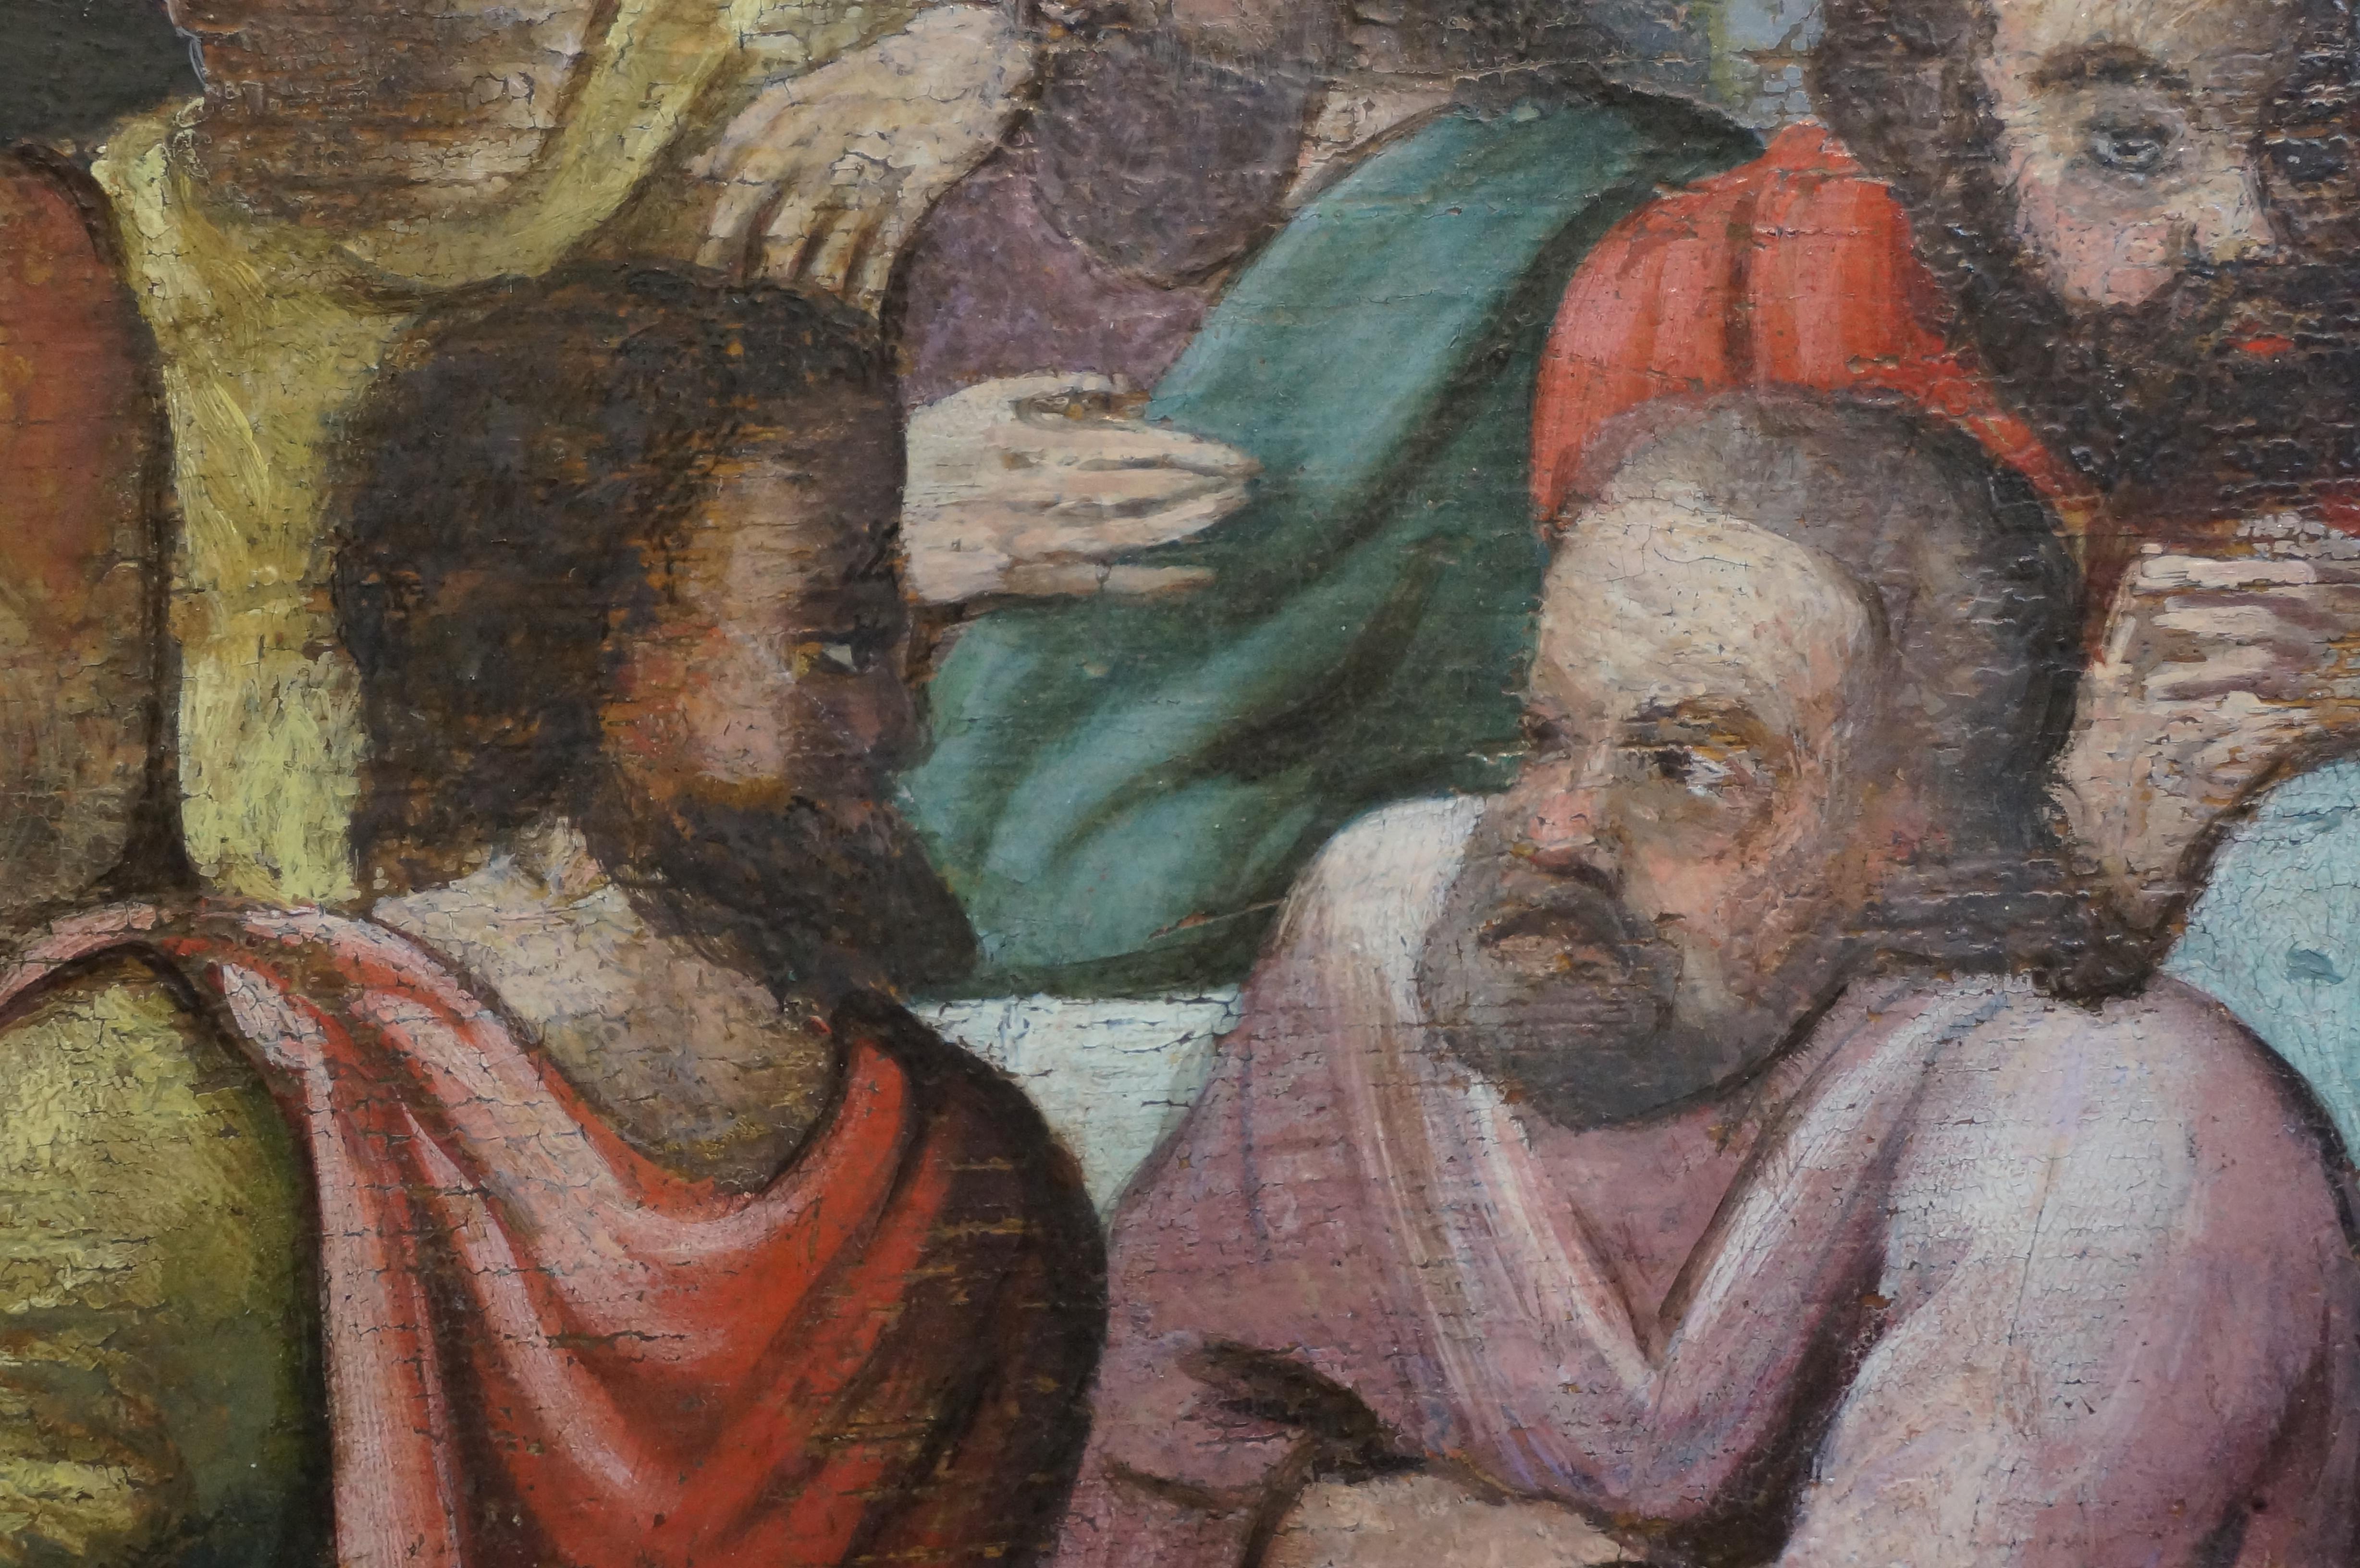 Anrique oil painting, Last Supper, German school, Renaissance, Late 16th c. 7